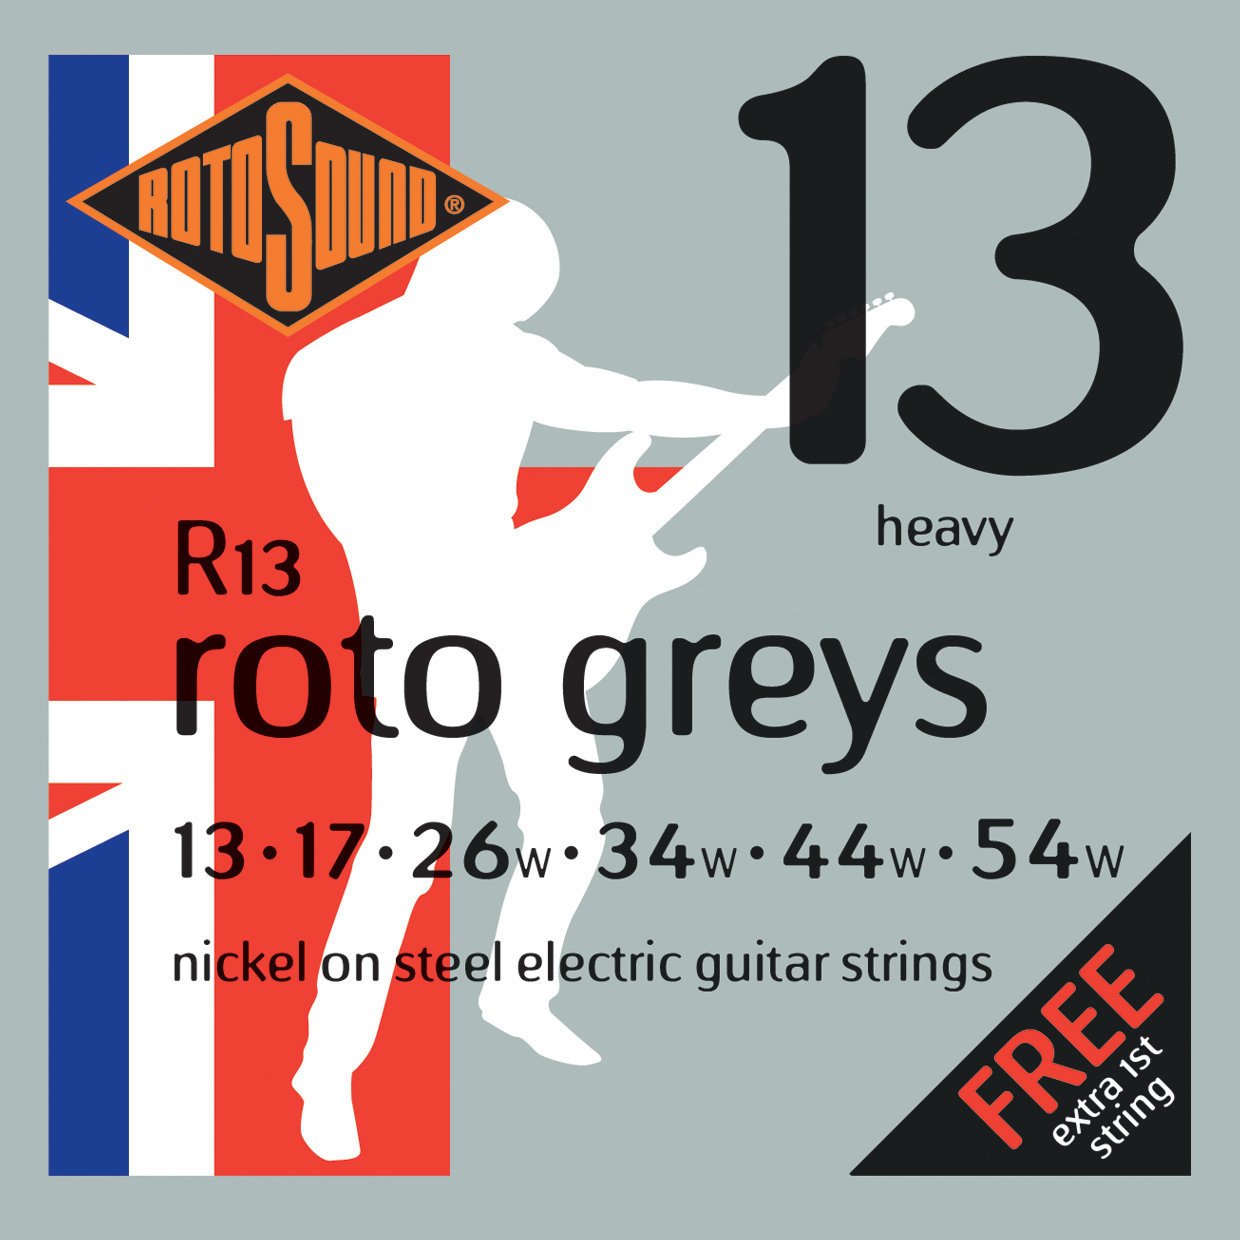 Cordes pour guitares électriques Rotosound R13